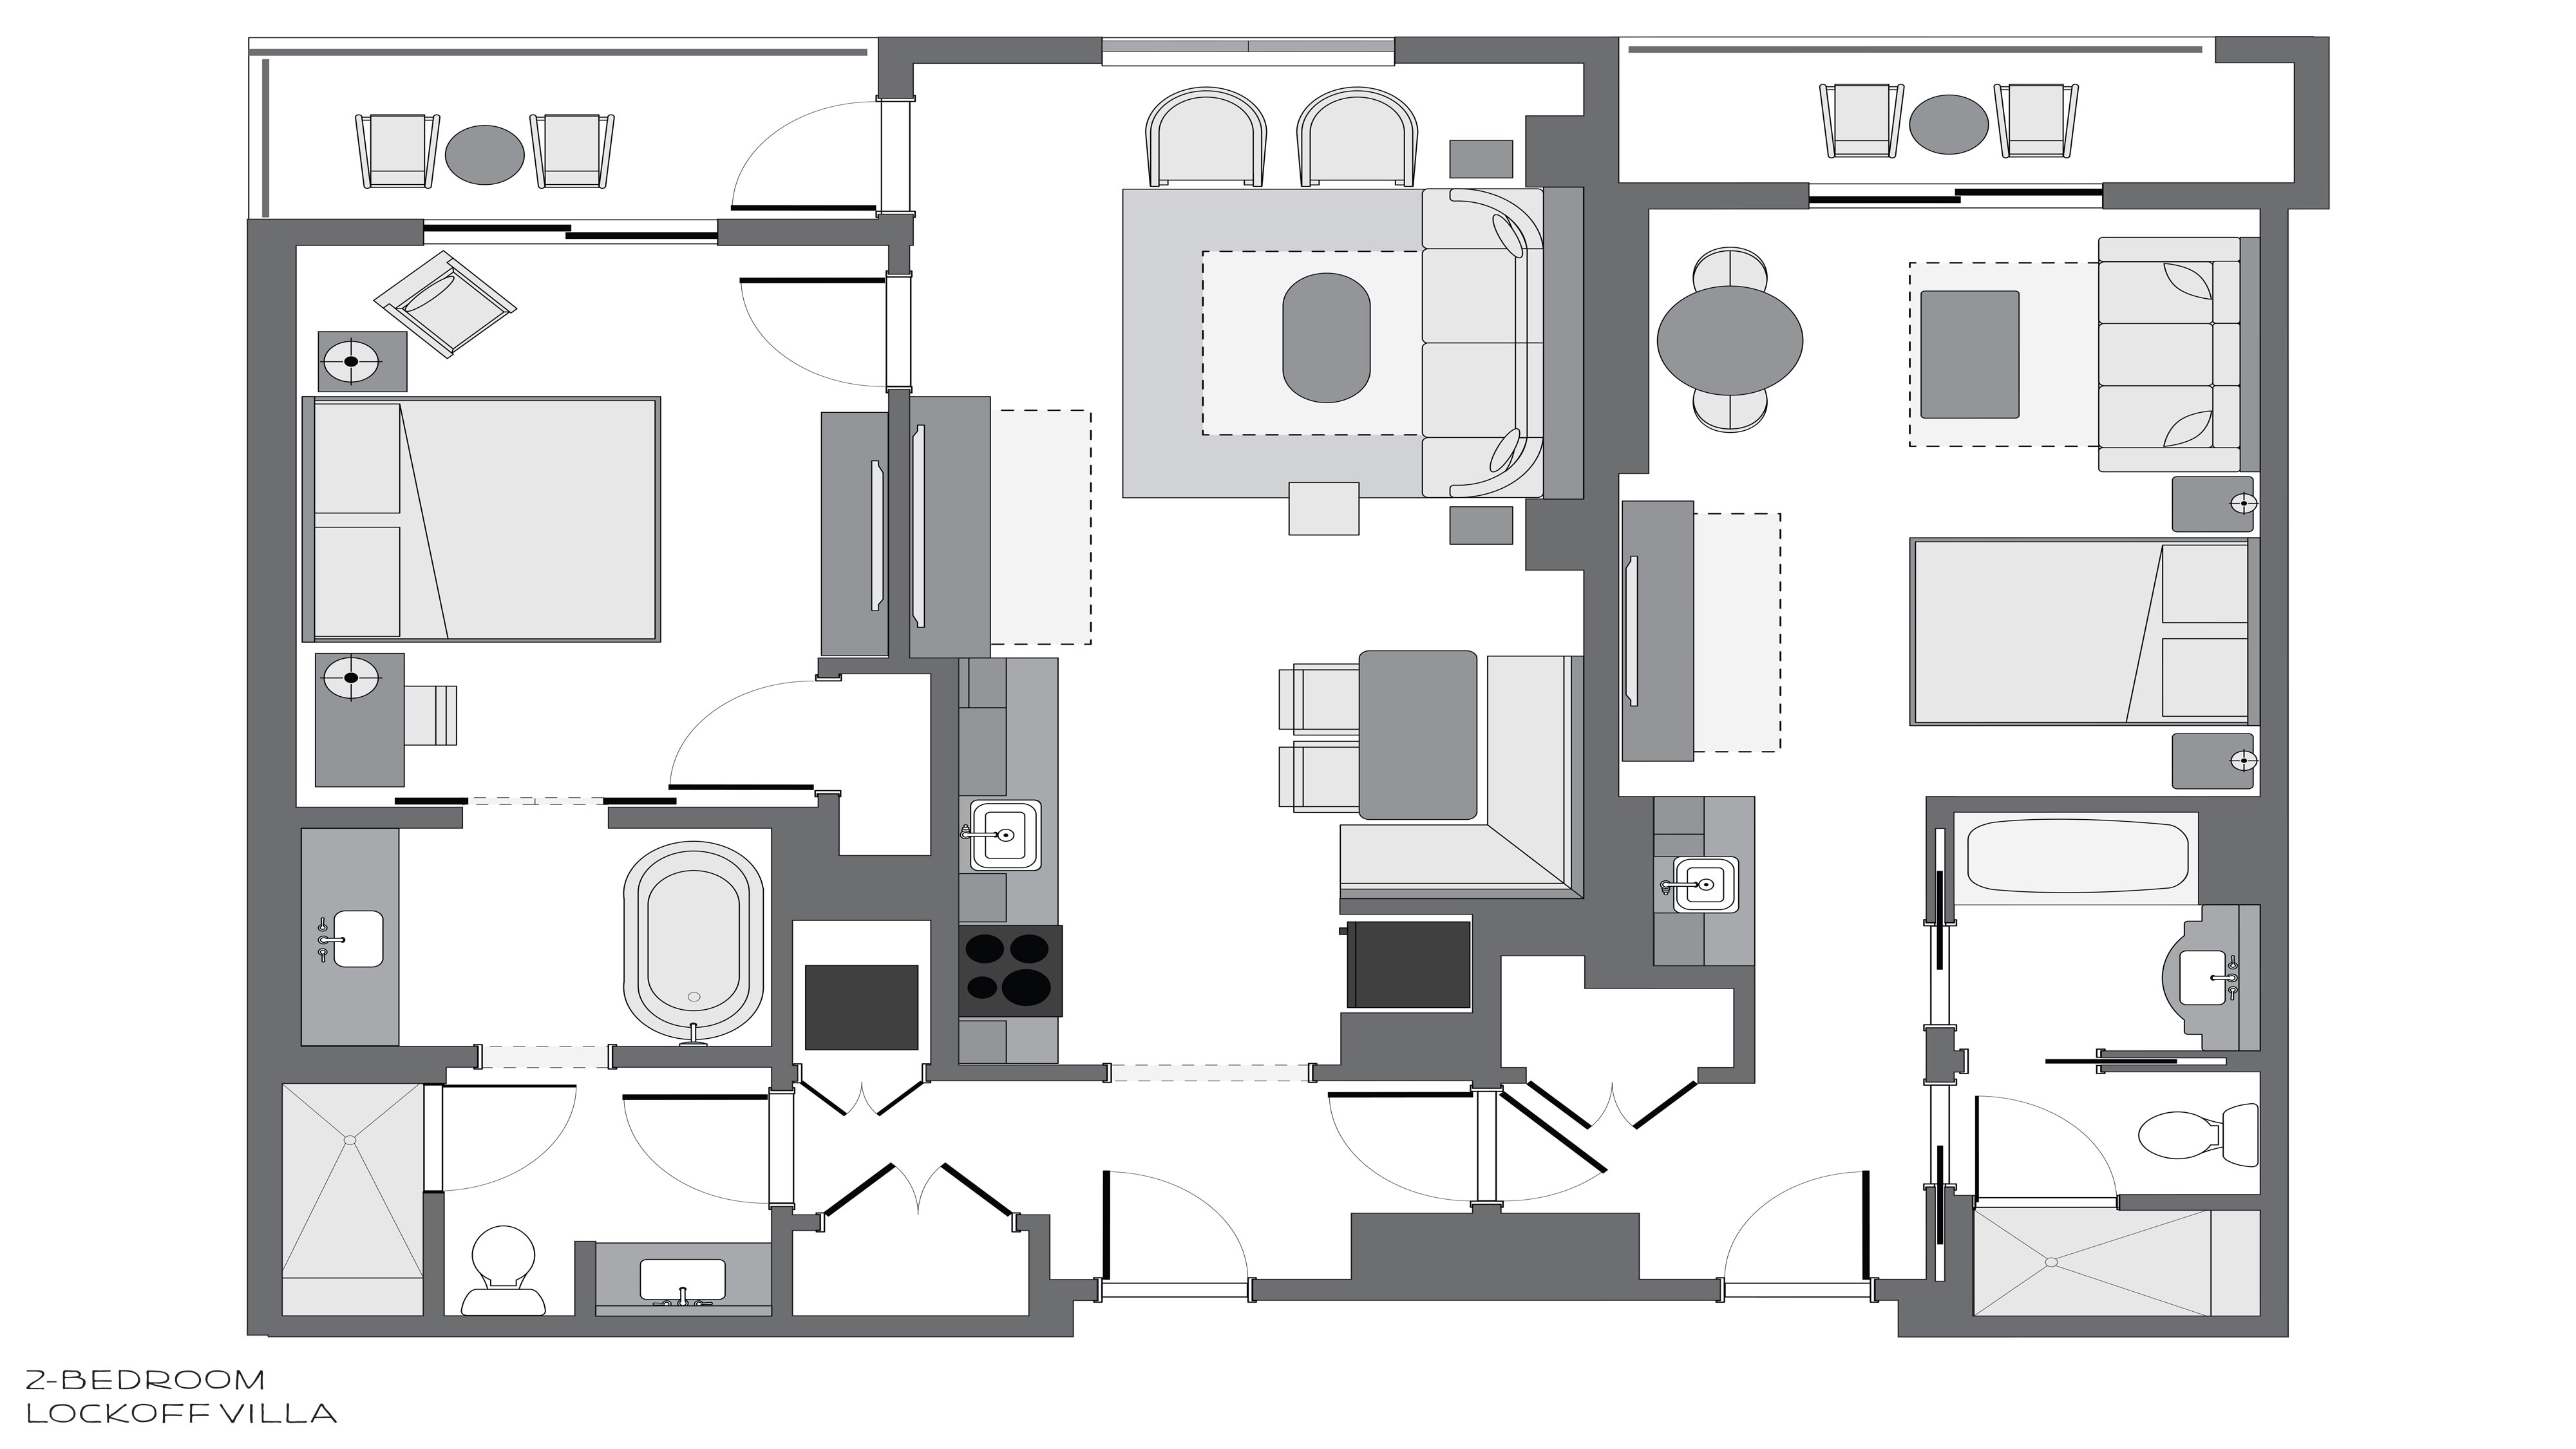 Riviera-2bedroom-Lockoff-Villa-Floorplan-16x9